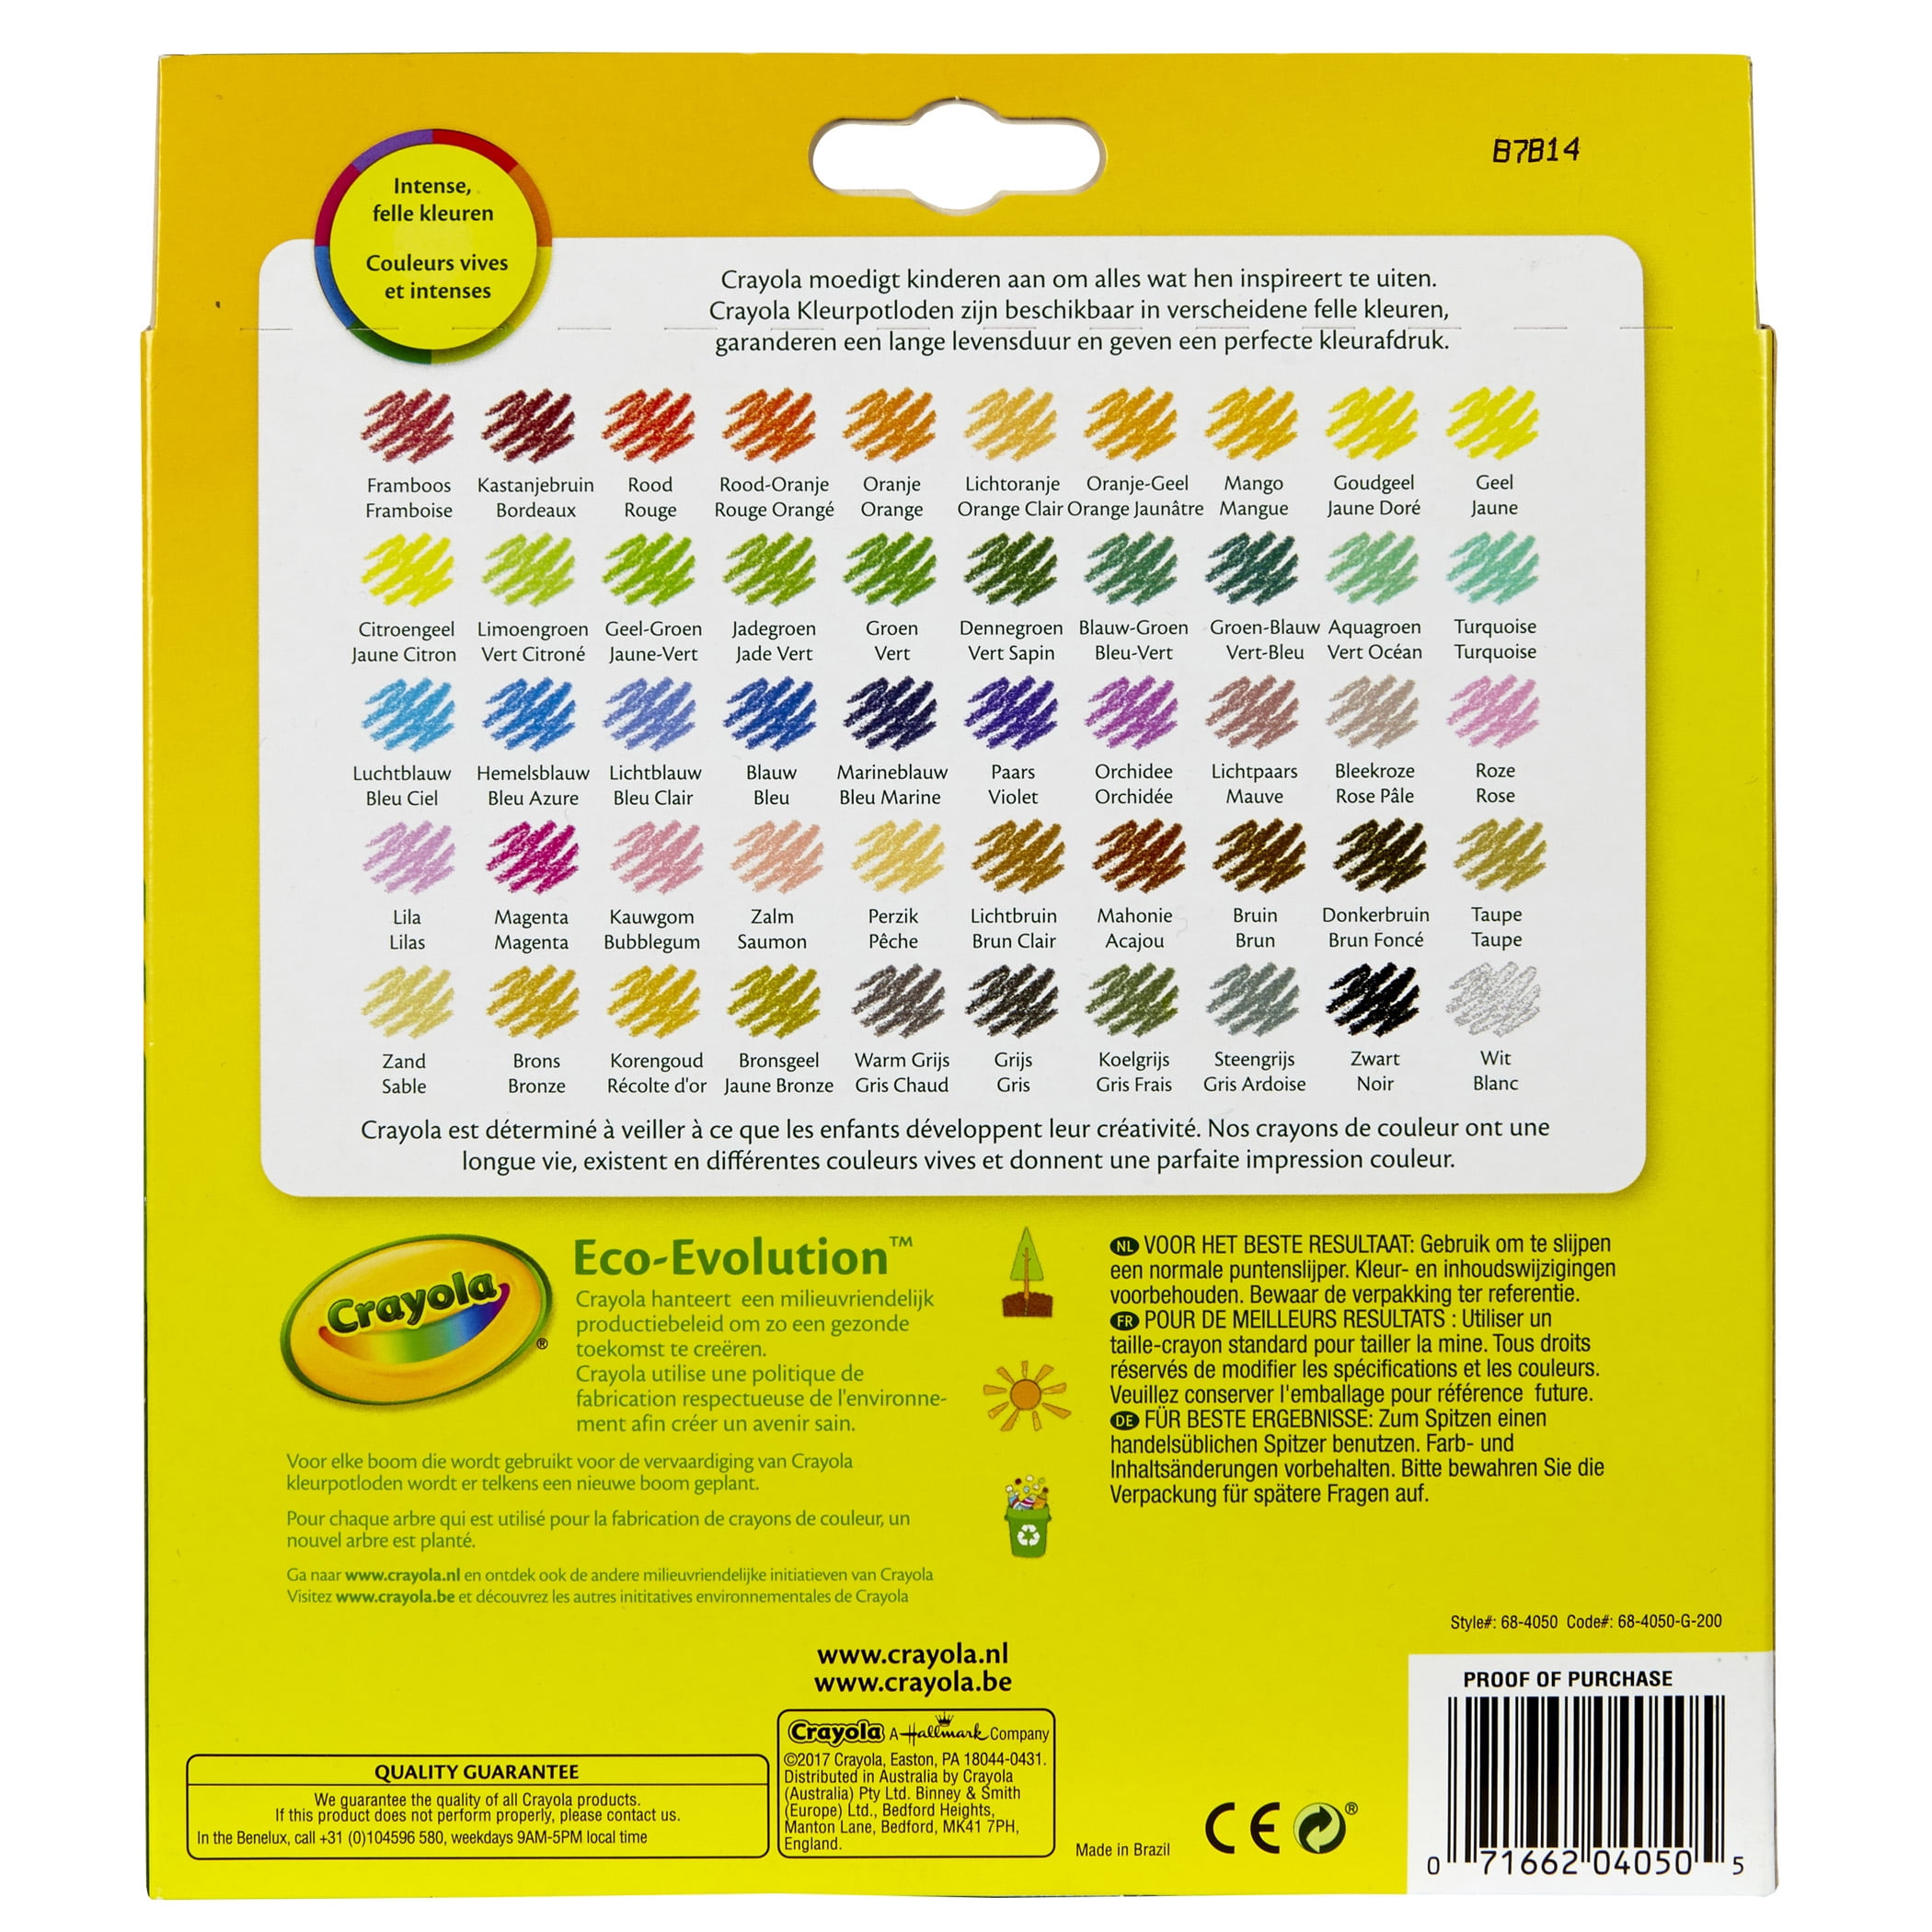 (2 BX) Crayola Colored Pencils 50ct